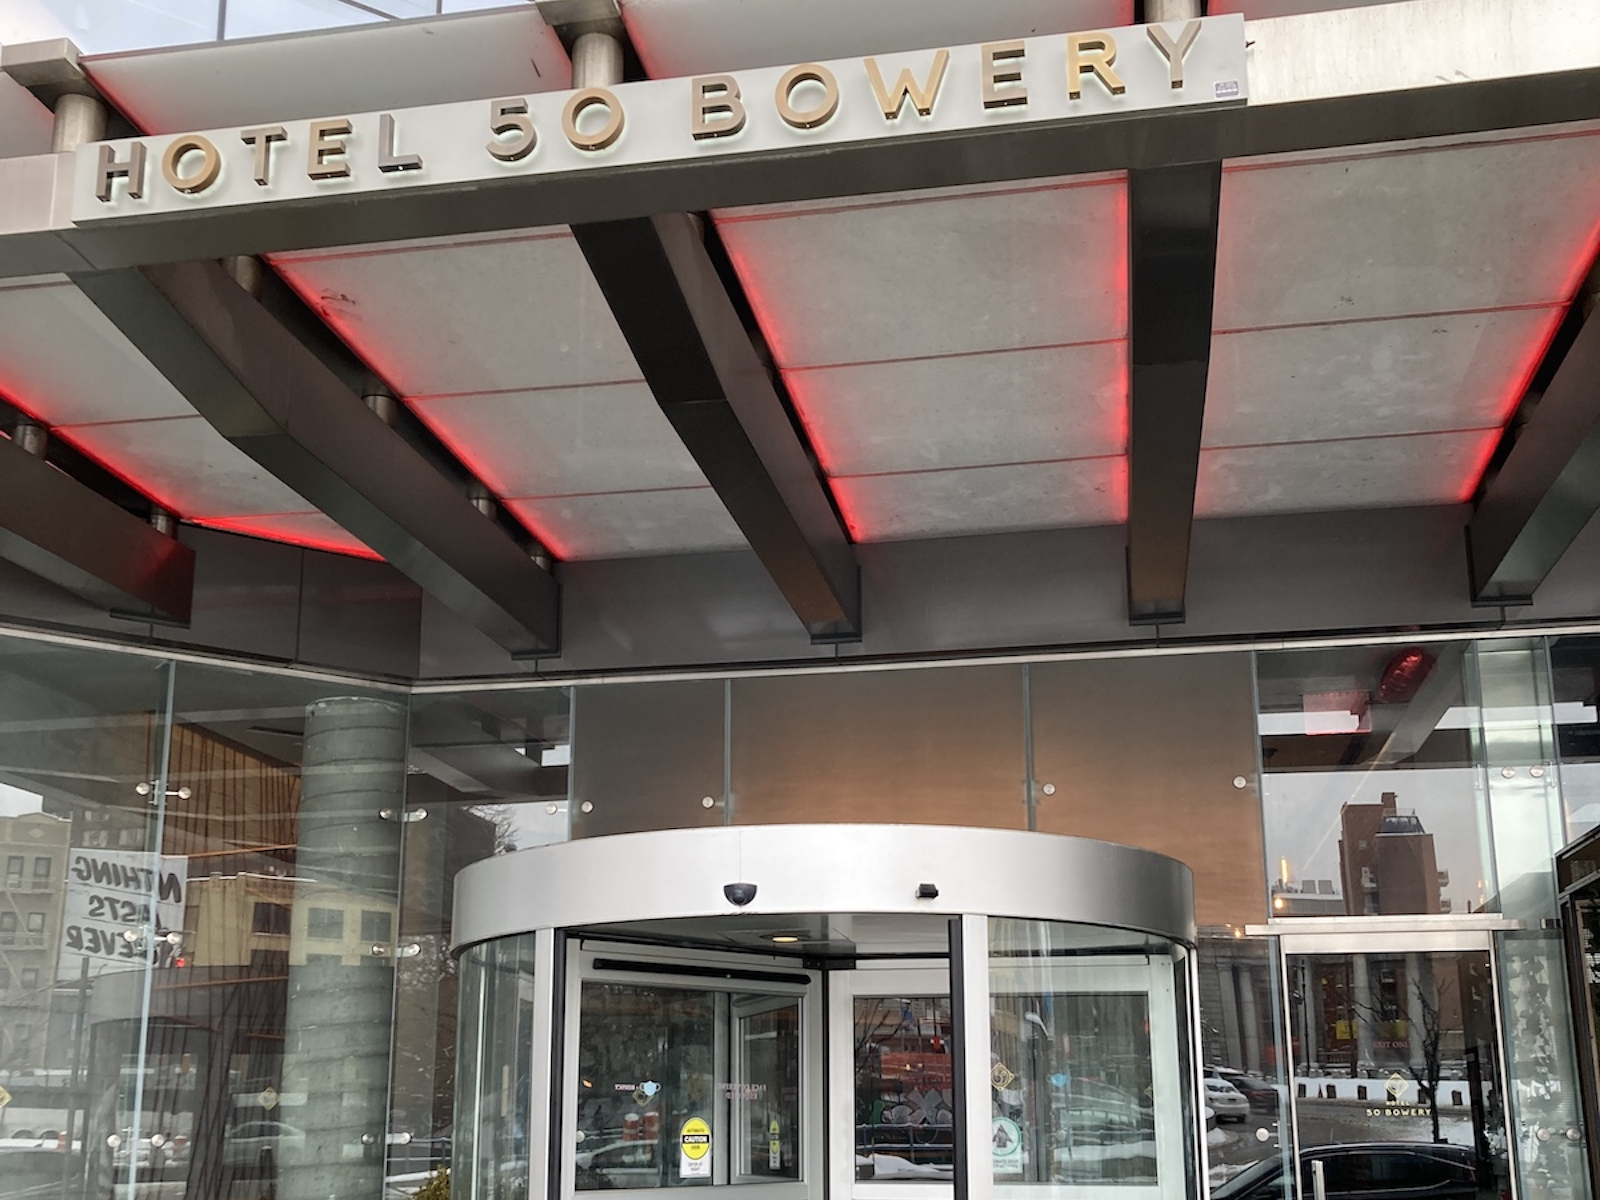 Hotel 50 Bowery Review - Hyatt Joie de Vivre Hotel in NYC